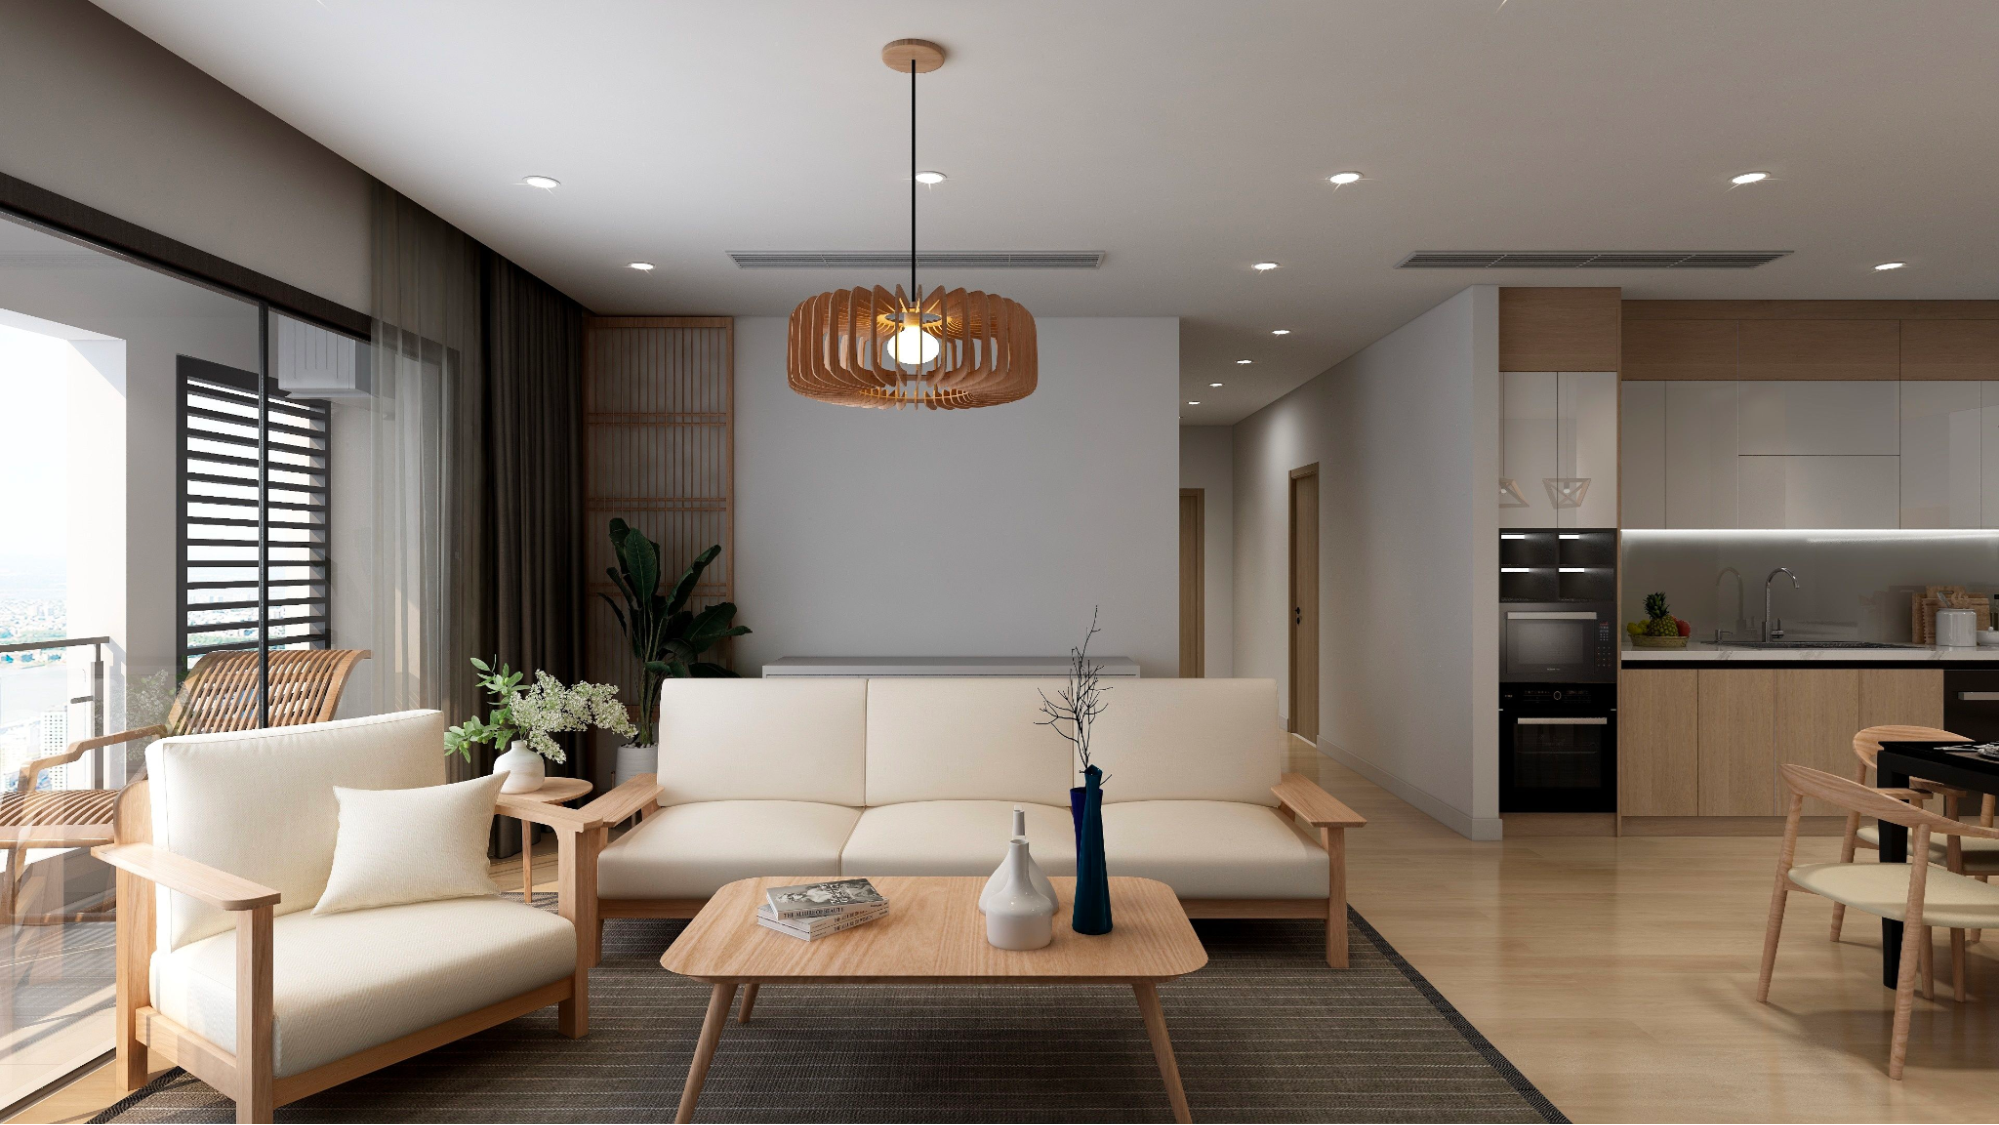 Thiết kế nội thất mẫu căn hộ cao cấp hiện đại giá cả hợp lý